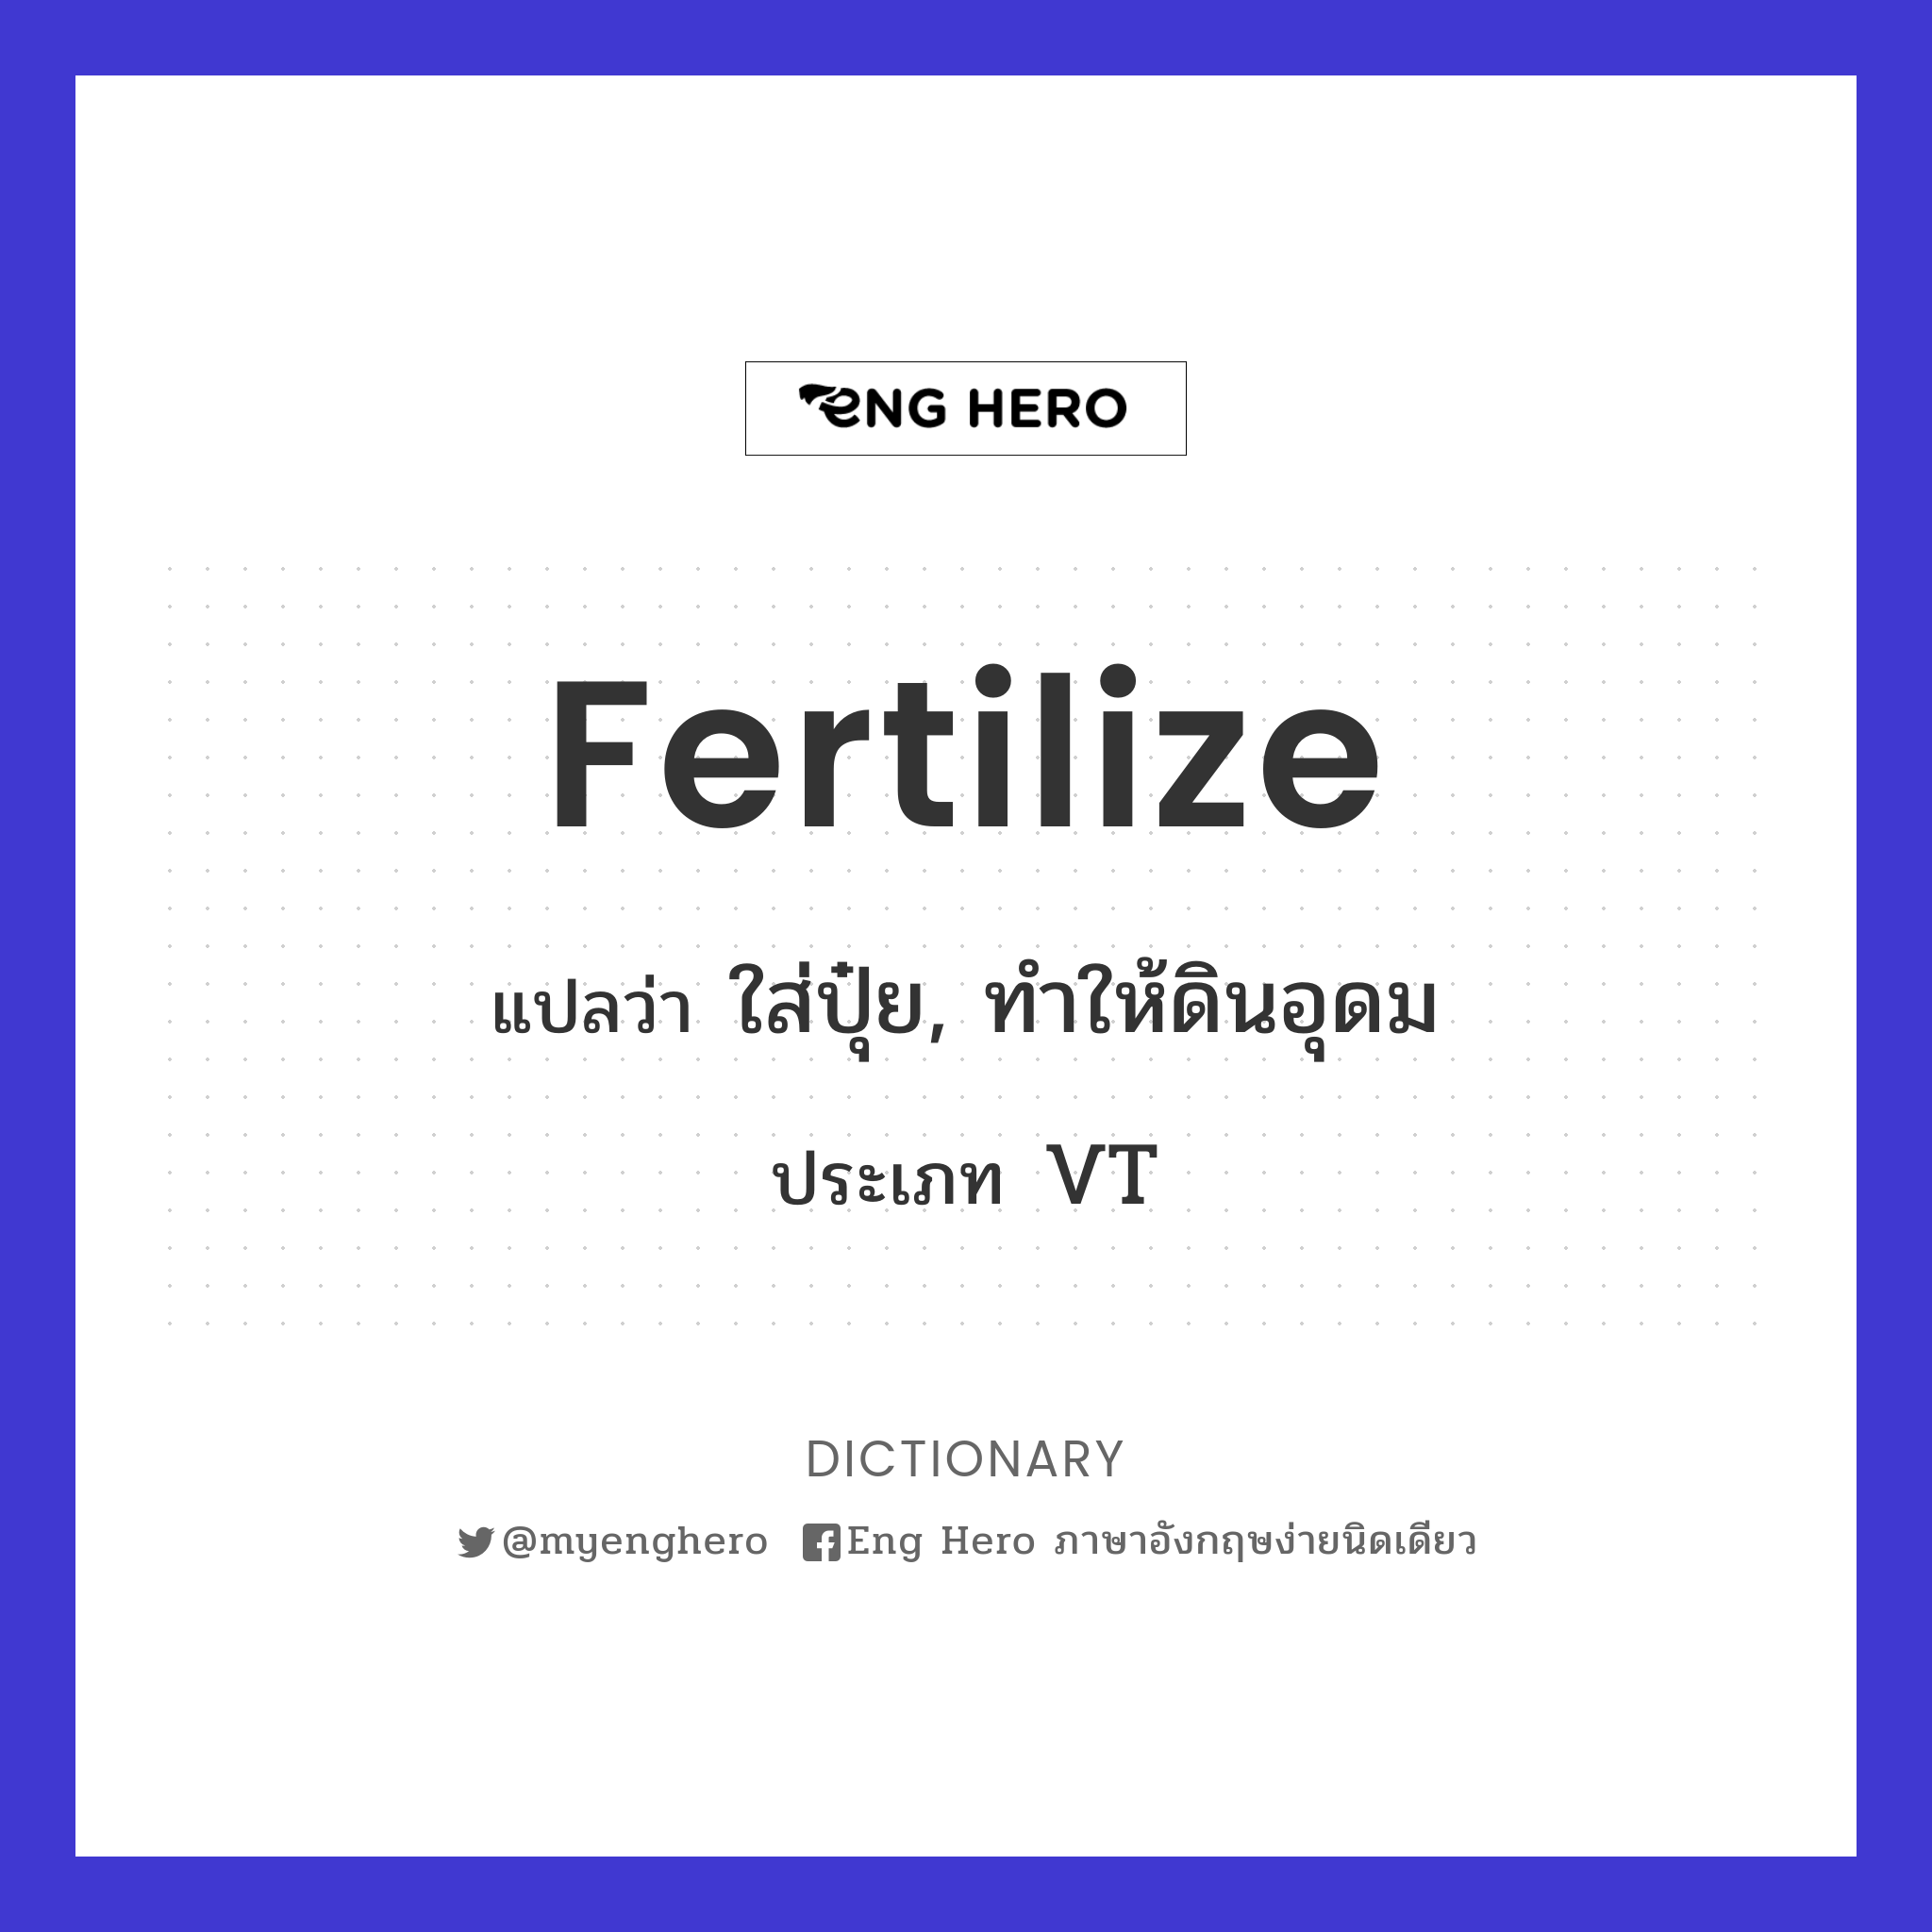 fertilize